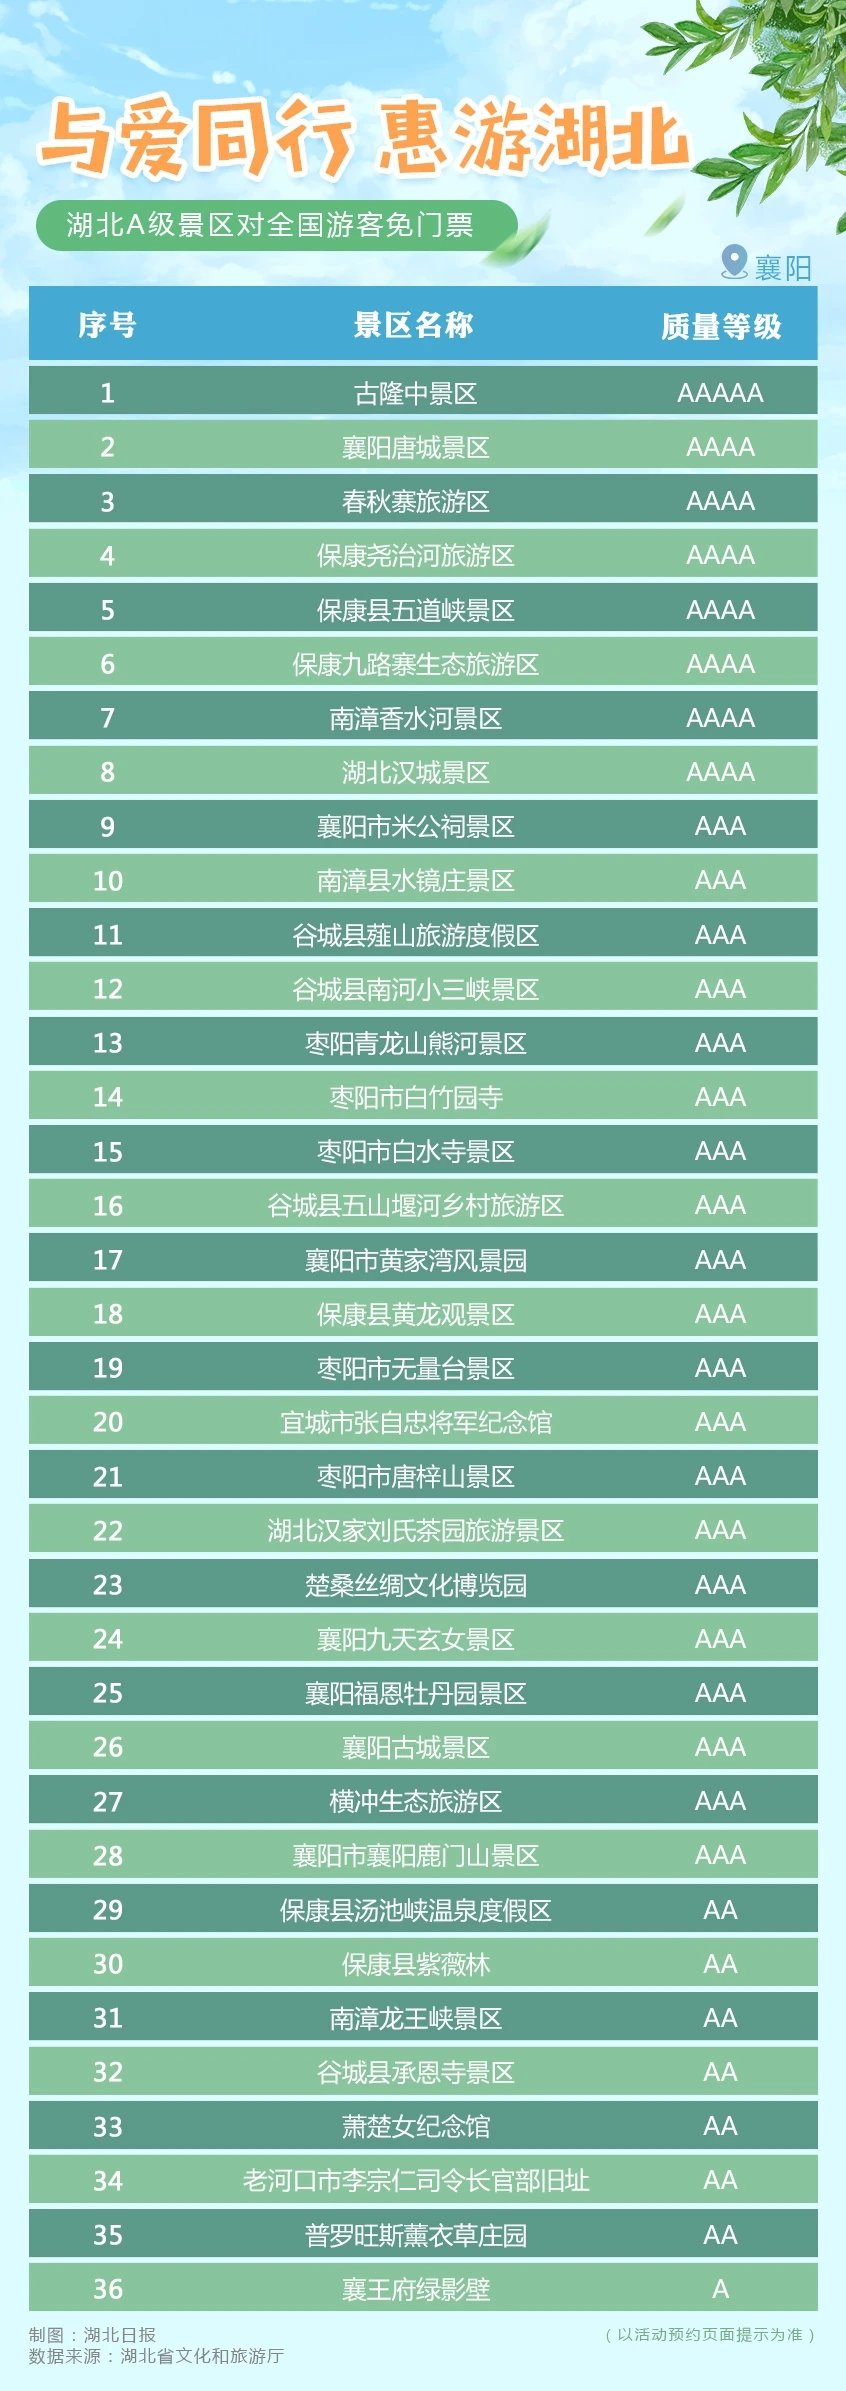 2020年惠游湖北【襄阳】A级景区免费名单​一览表